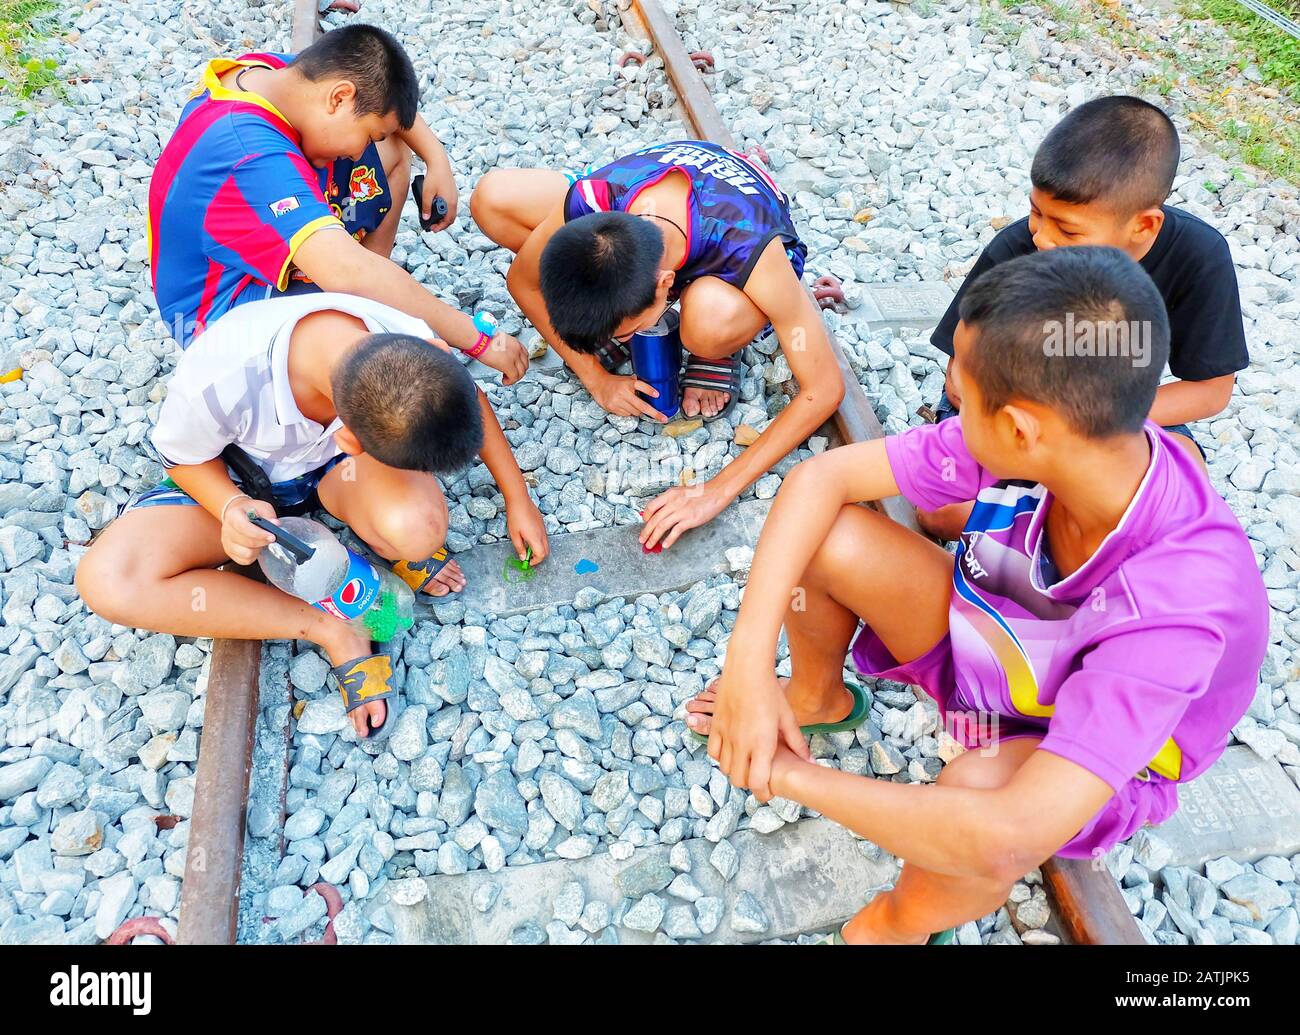 Les adolescents asiatiques font attention et peignant les formes cardiaques sur la voie ferrée. Concepts uniques de l'amour, de la Saint-Valentin, groupe adolescent, adolescent Banque D'Images